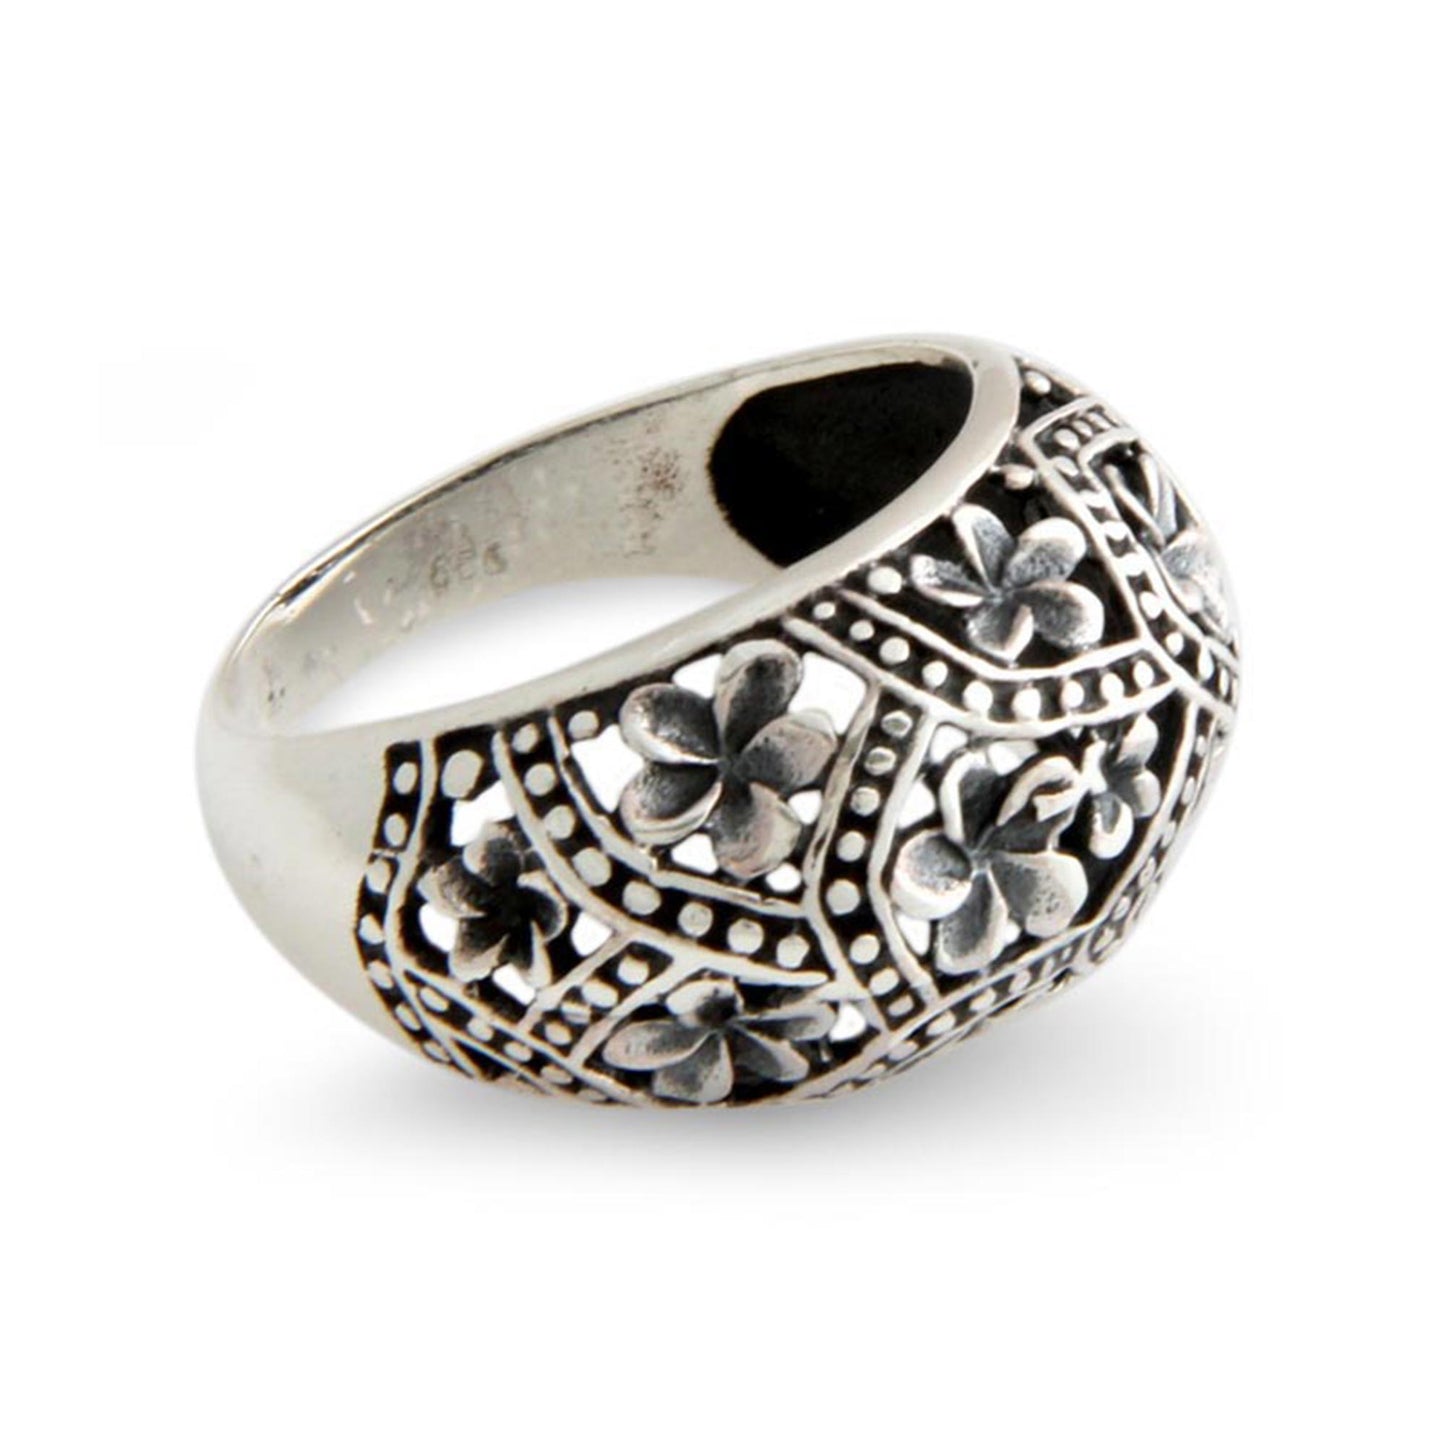 Frangipani Mystique Sterling Silver Floral Ring